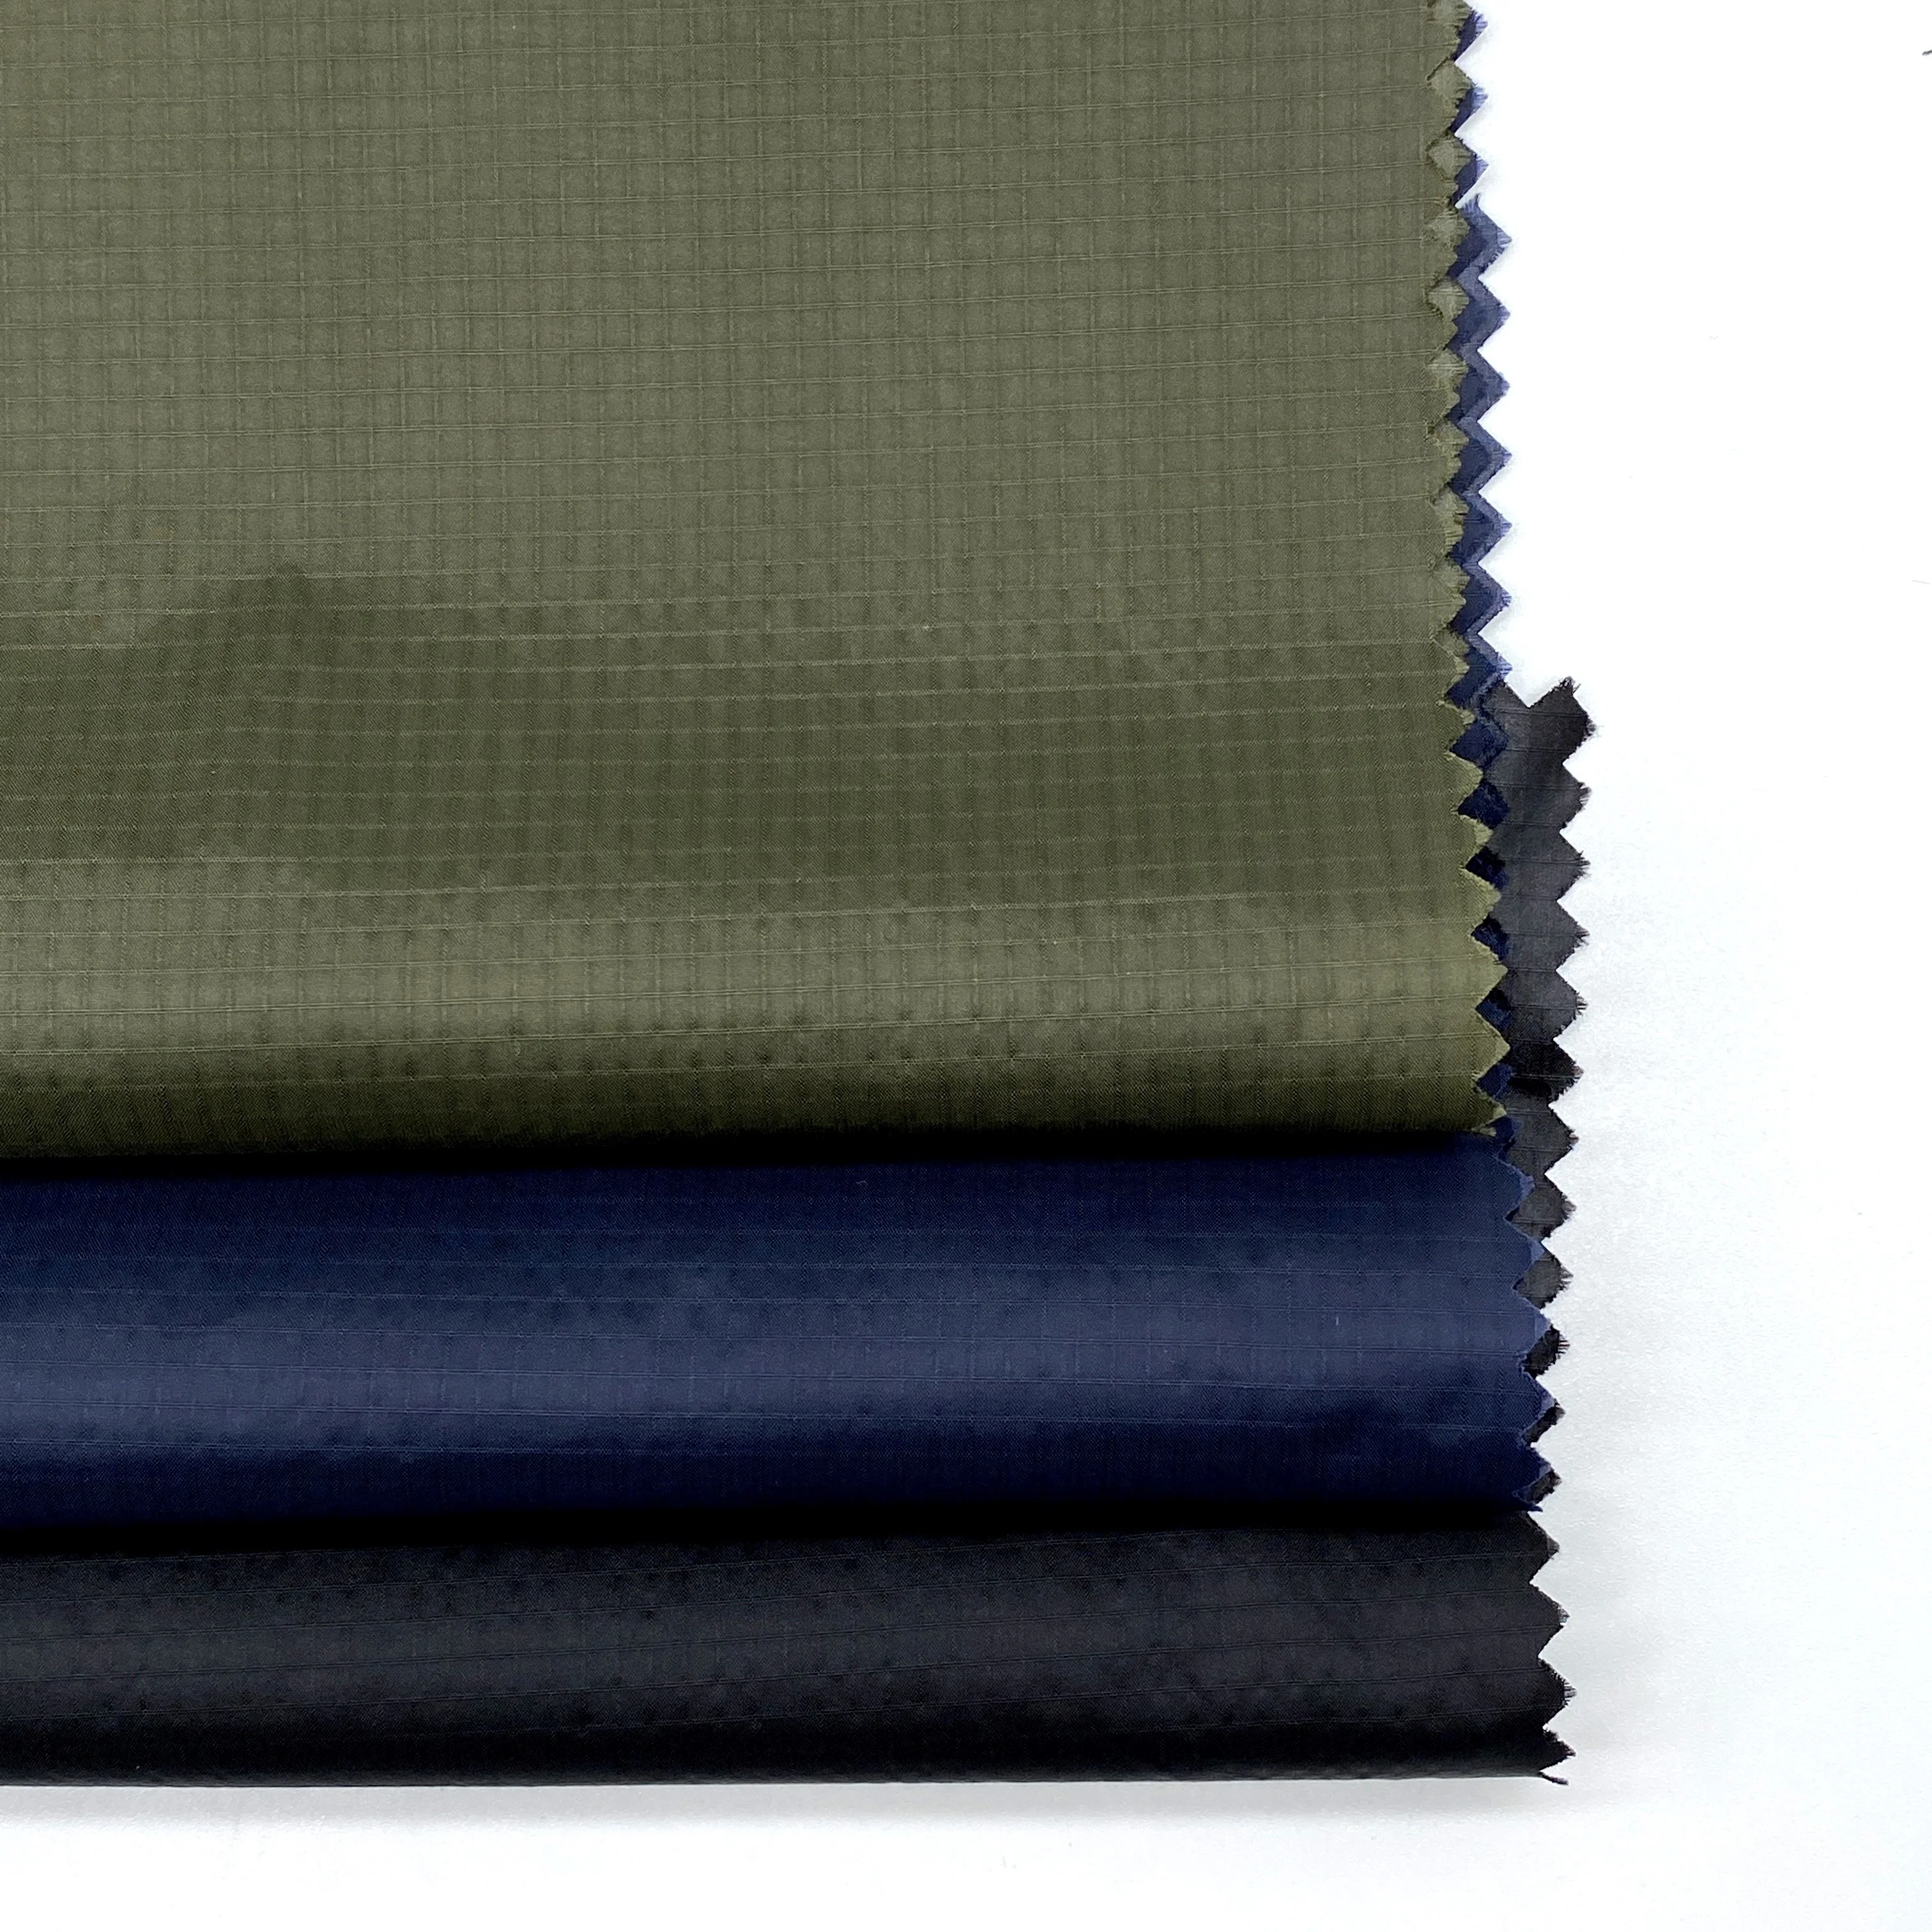 
OEKO 100 стандартная GRS 430T 0,2*0,2 см нейлоновая ткань Ripstop 100% водонепроницаемая отделка одежды мужских пальто  (1600108787826)